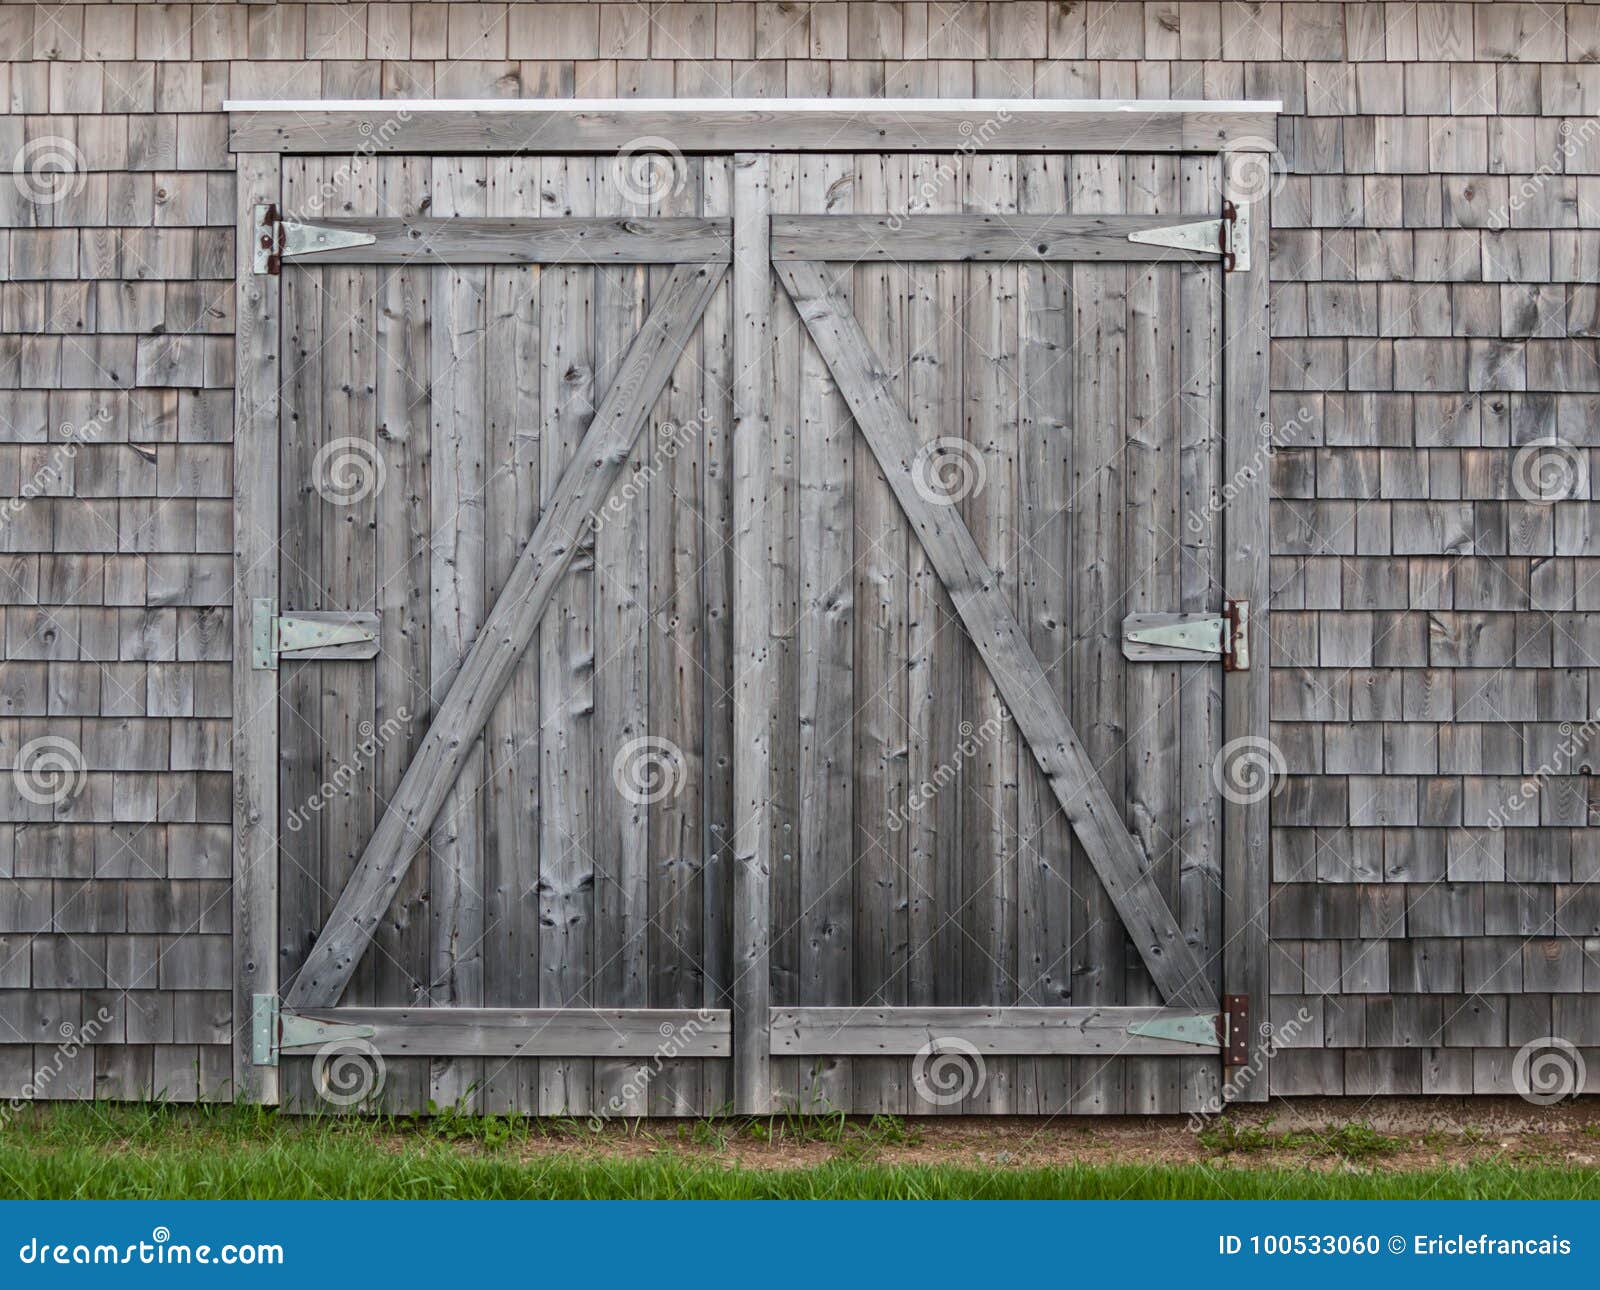 old cedar barn doors